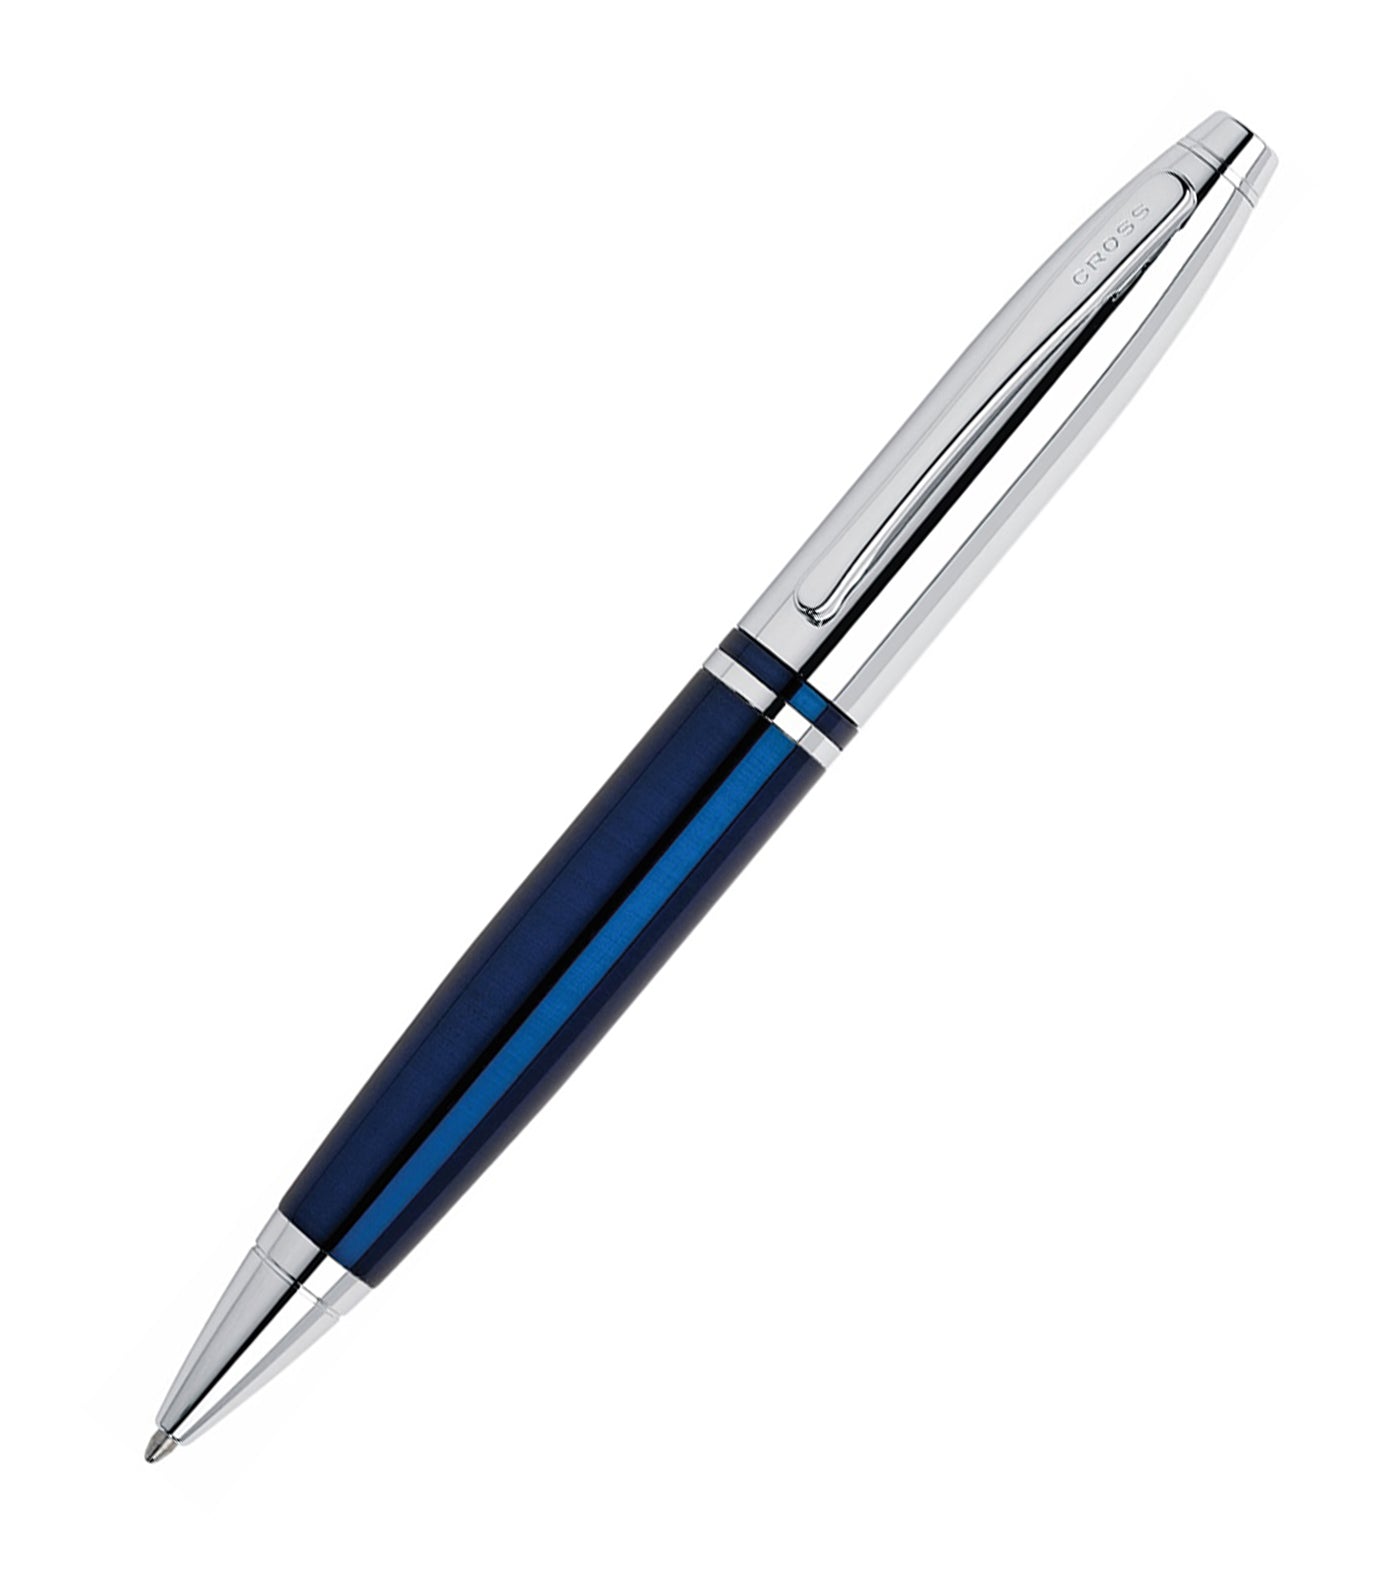 Calais Chrome and Blue Lacquer Ballpoint Pen